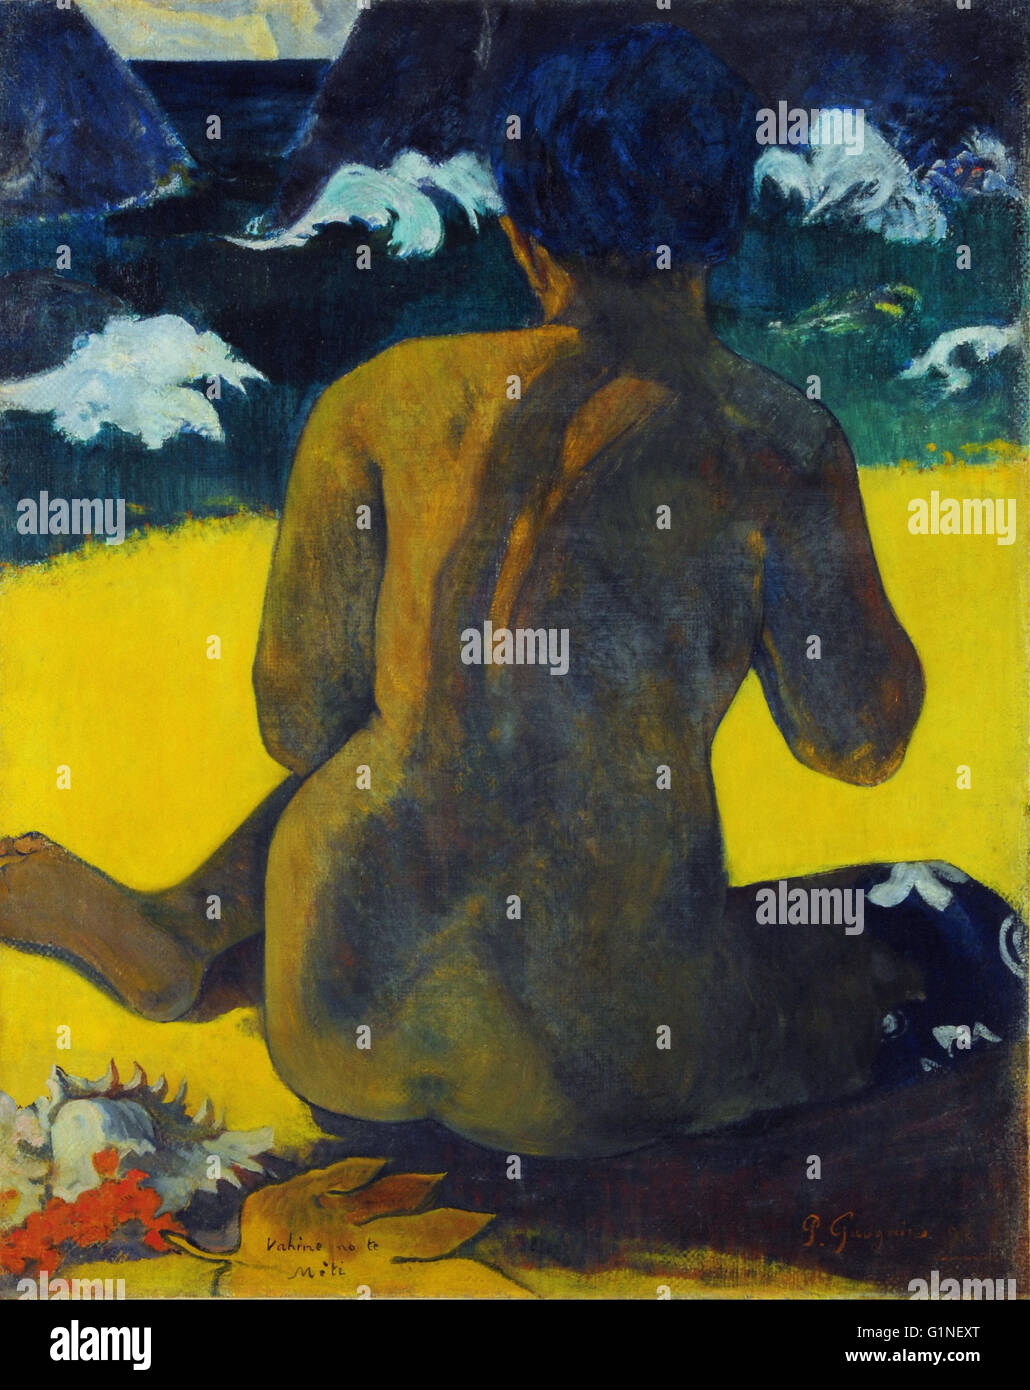 Gauguin, Paul - Vahine no te miti (Femme a la mer) (Mujer del mar)   - Museo Nacional de Bellas Artes de Buenos Aires Stock Photo